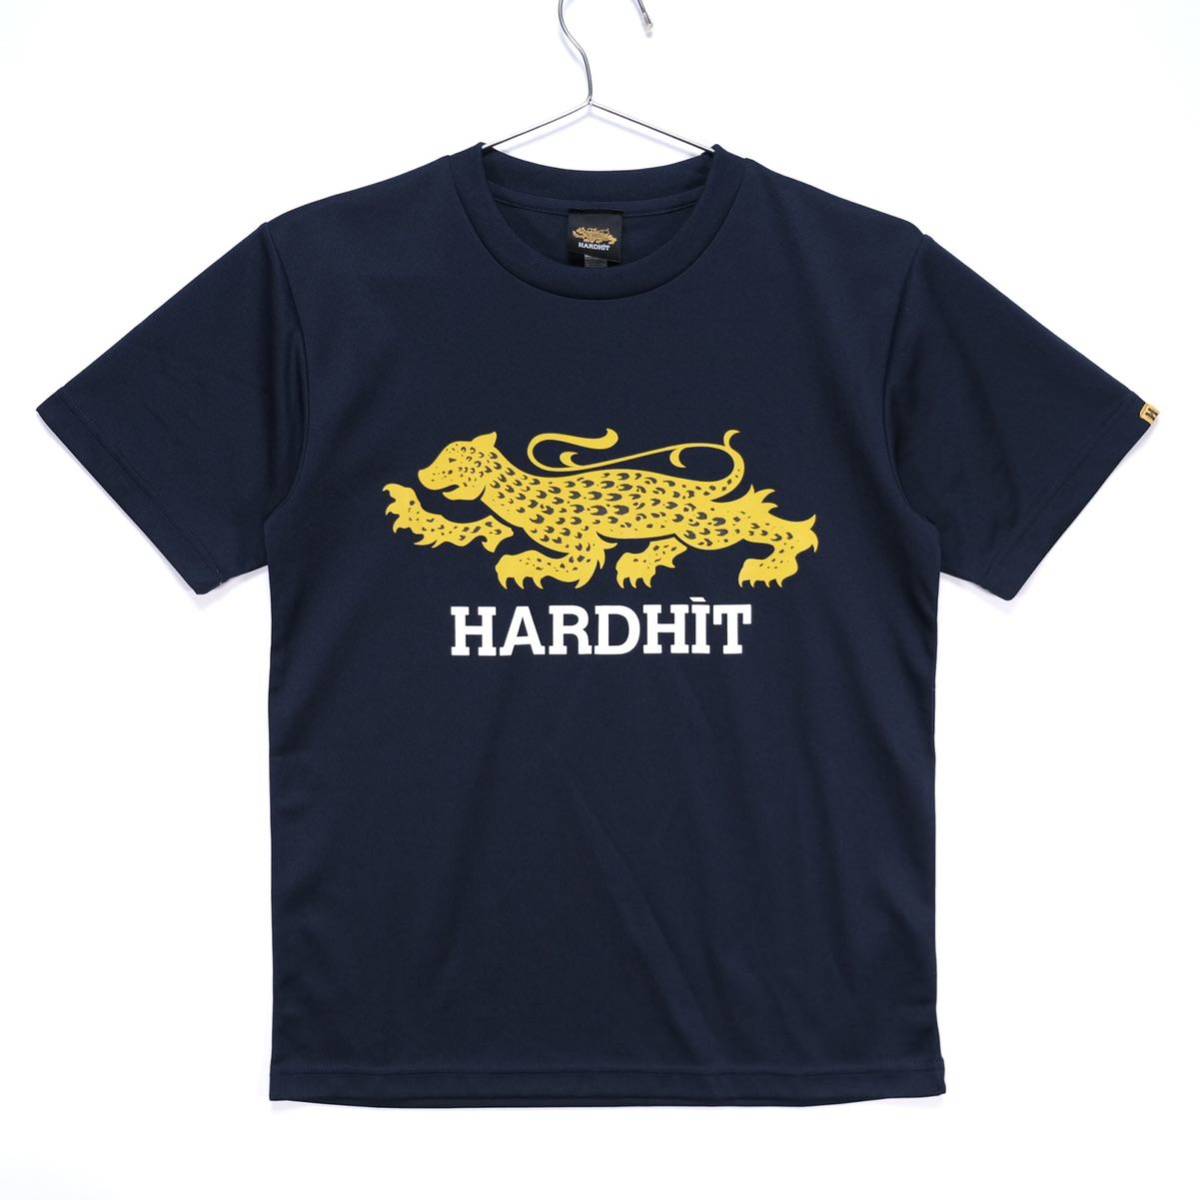 HARDHIT(ハードヒット)/ドライTシャツ/ロゴ/山本KID徳郁/半袖/ネイビー